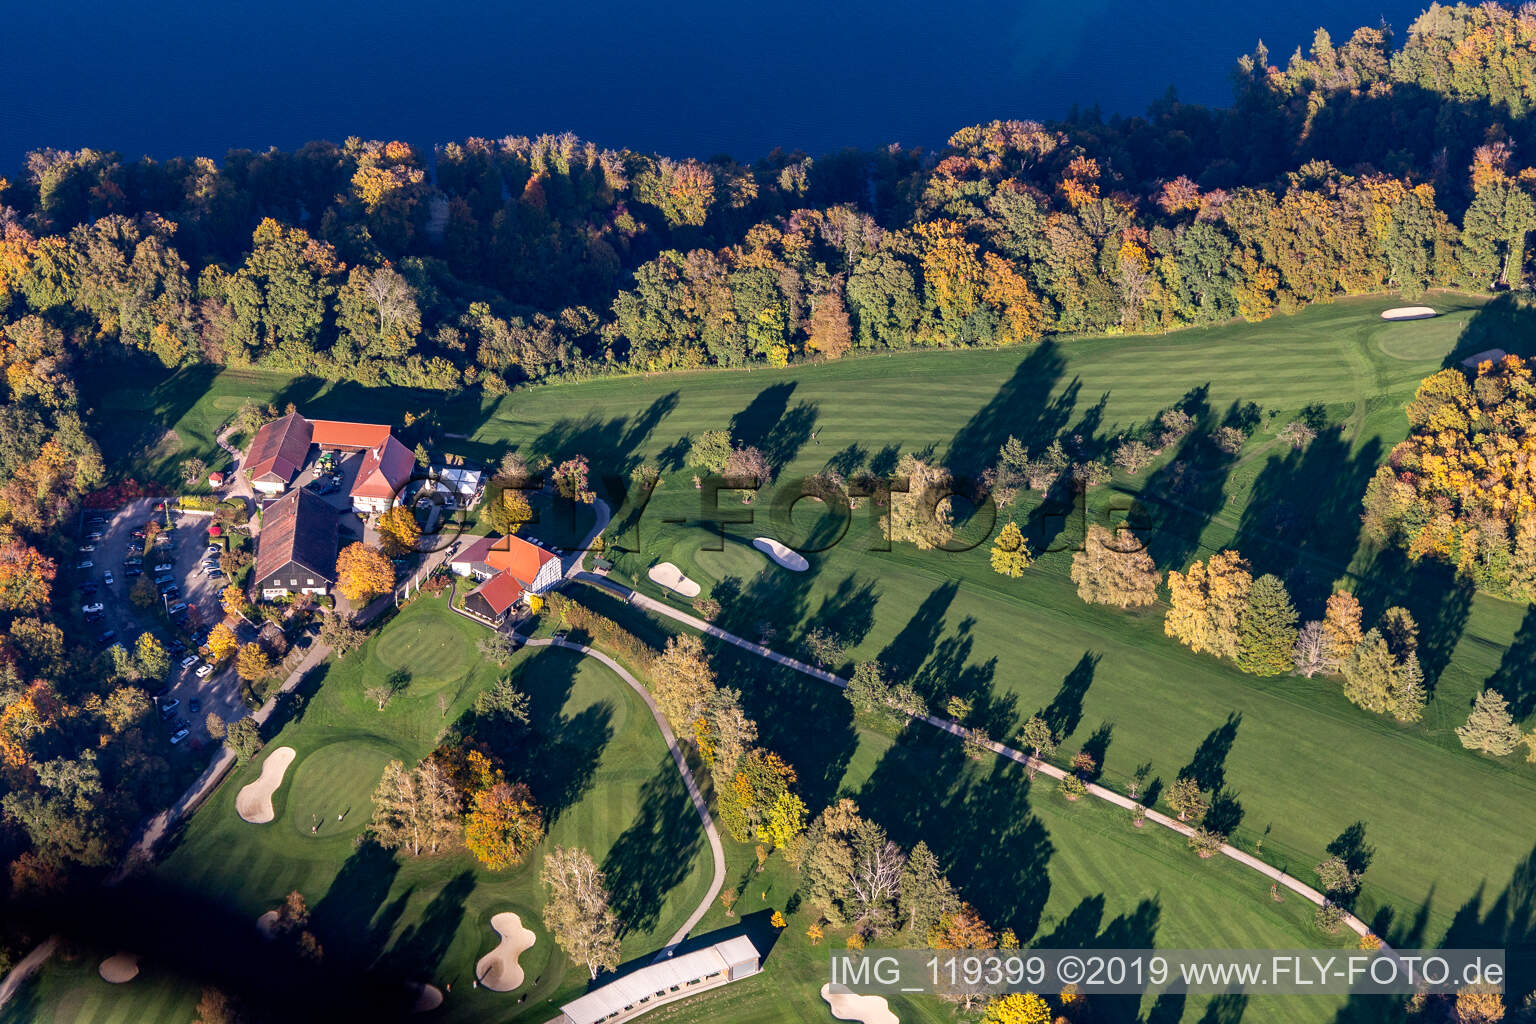 Luftbild von Gelände des Golfplatz des Golf-Club Konstanz im Ortsteil Langenrain in Allensbach im Bundesland Baden-Württemberg, Deutschland